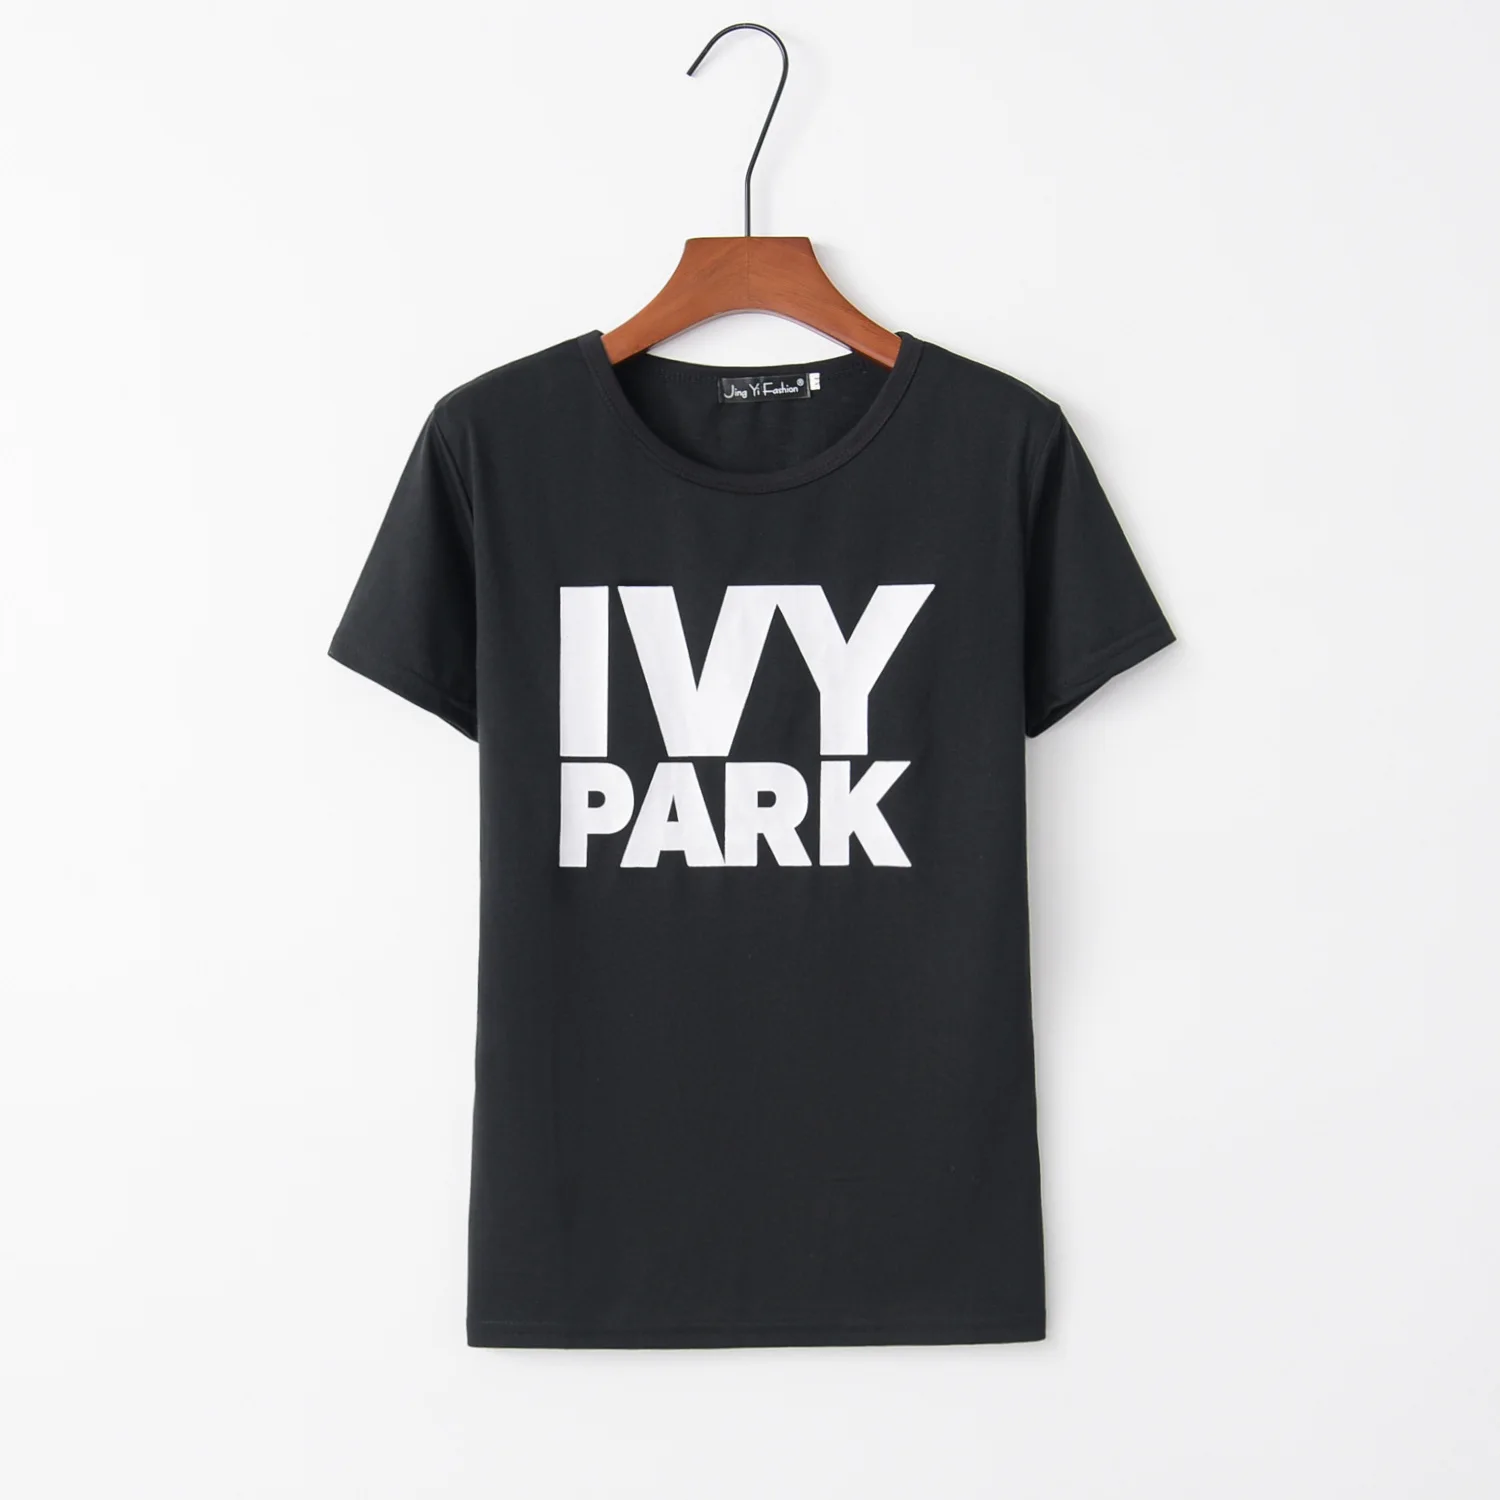 ivy park t shirt dress